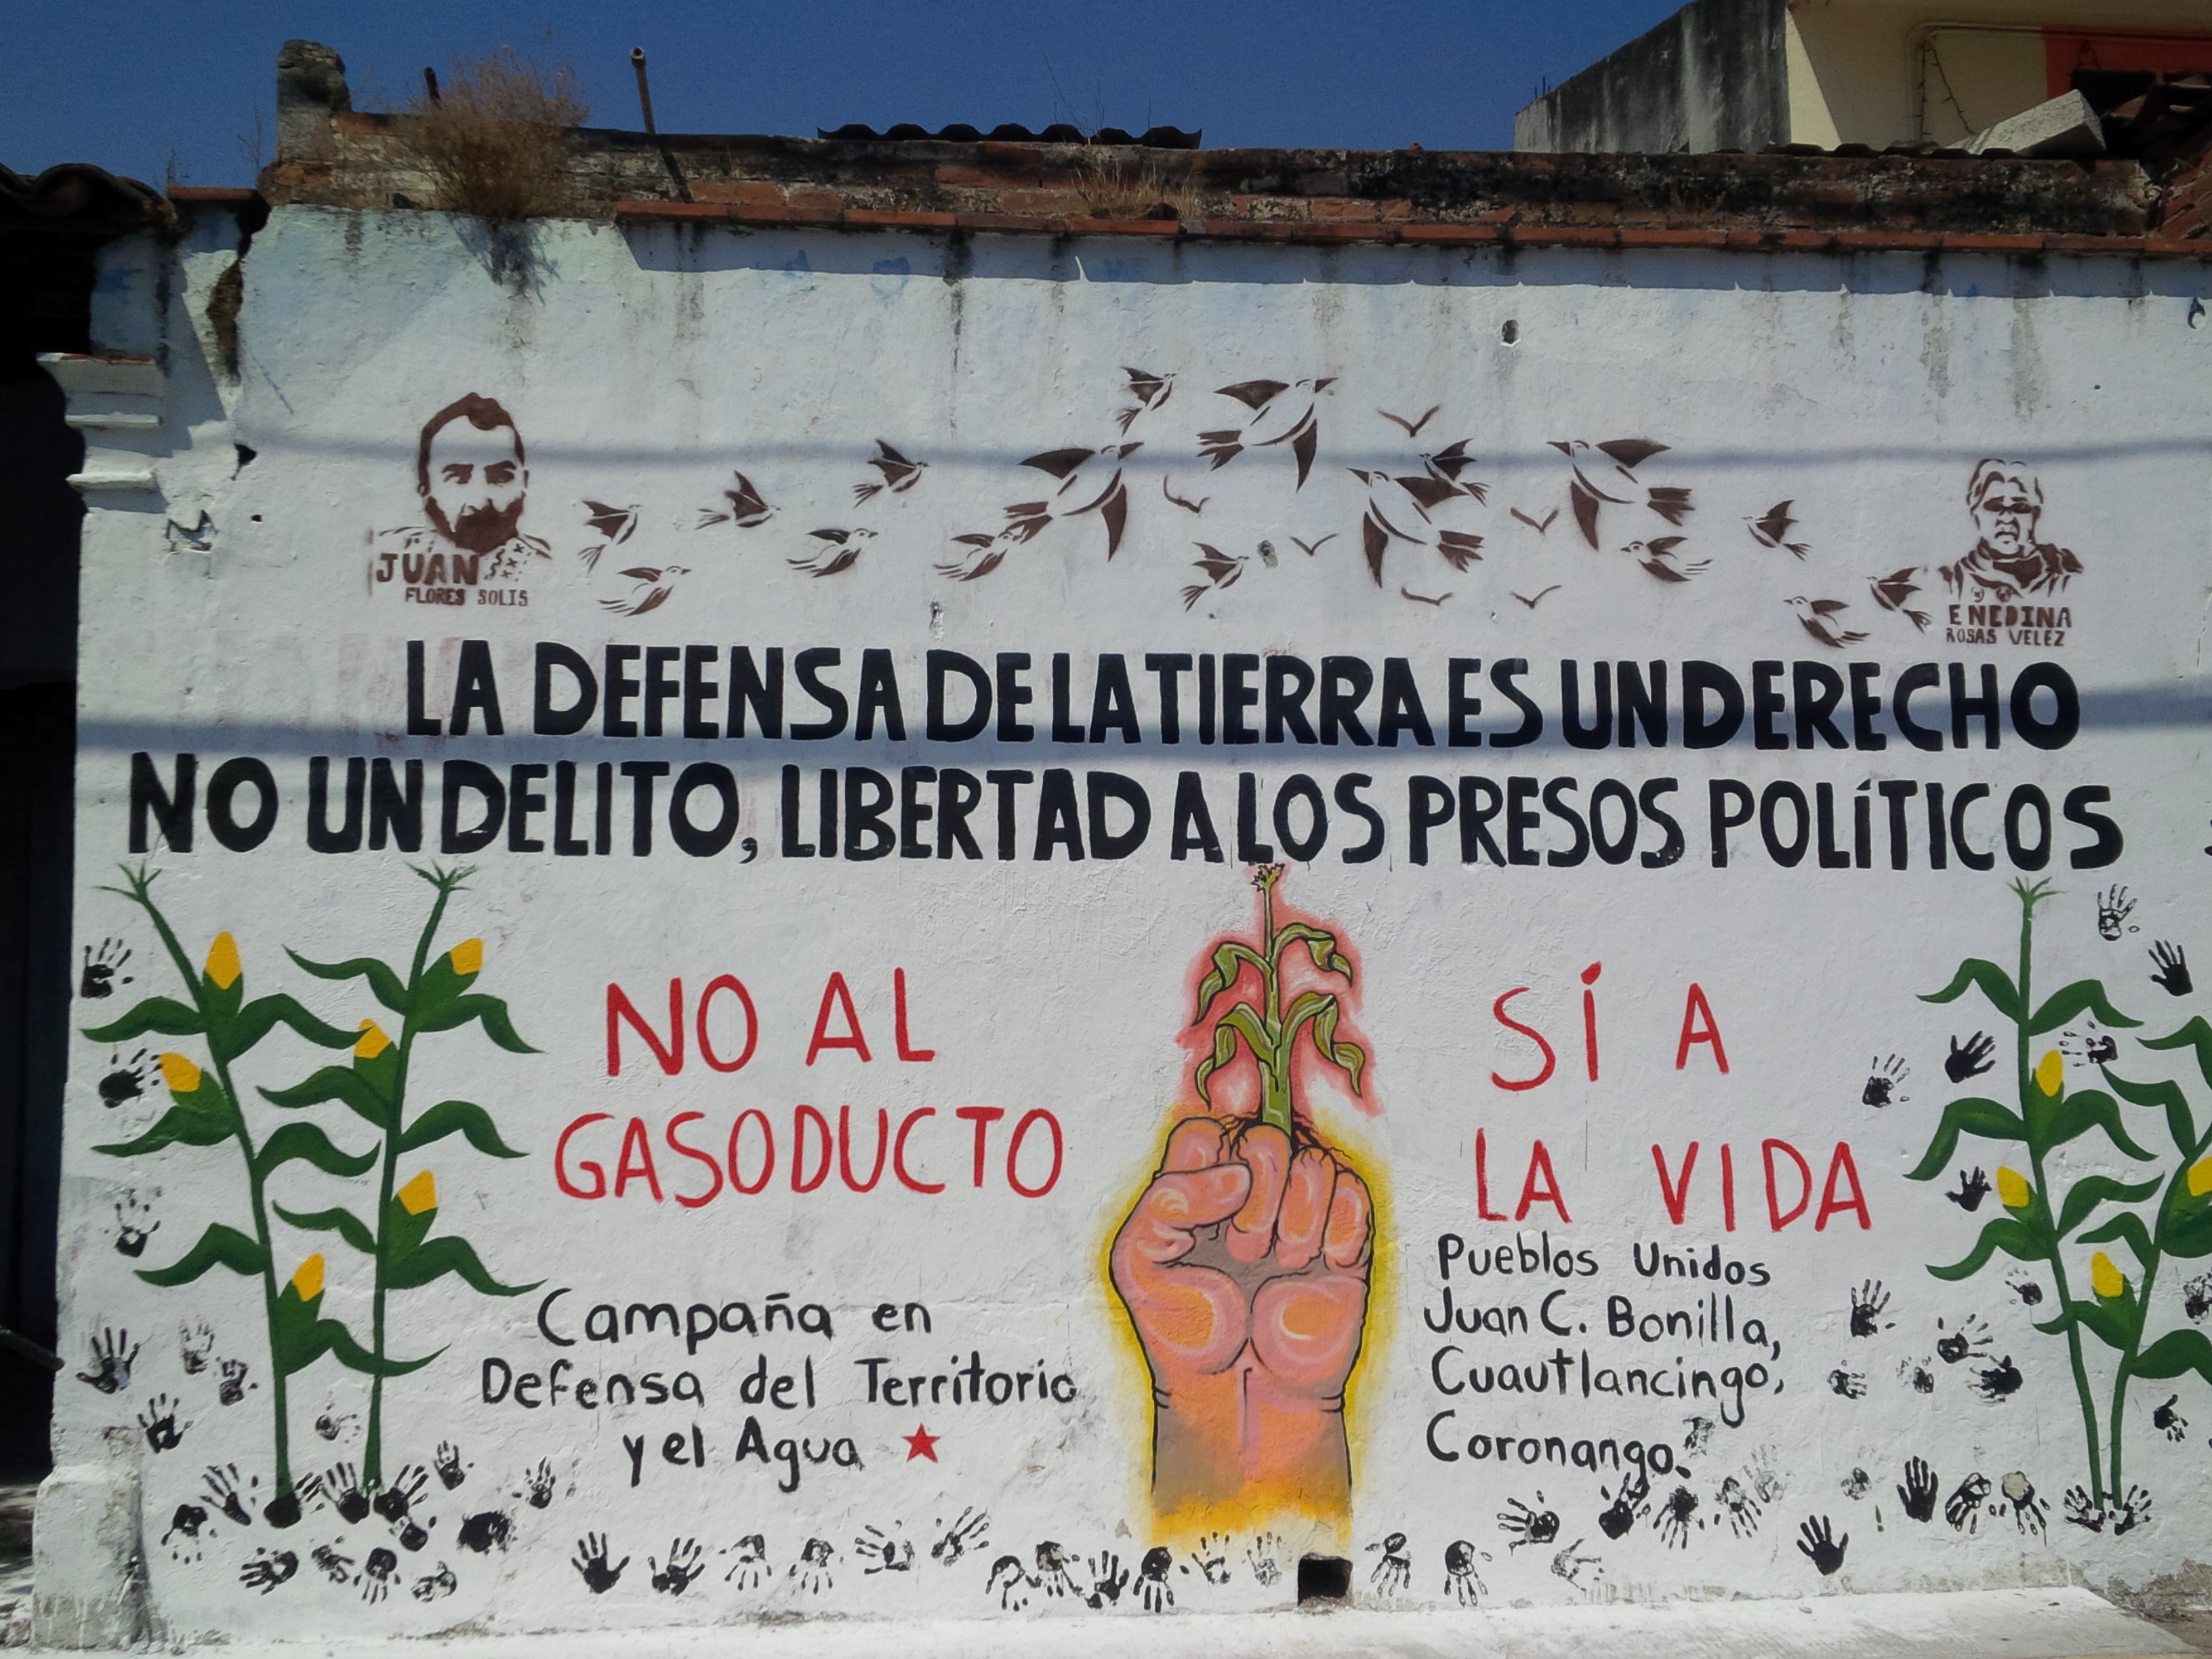 Campaña de murales en defensa del territorio y del agua contra el gasoducto en municipios de Puebla | Foto: La Jornada de Oriente